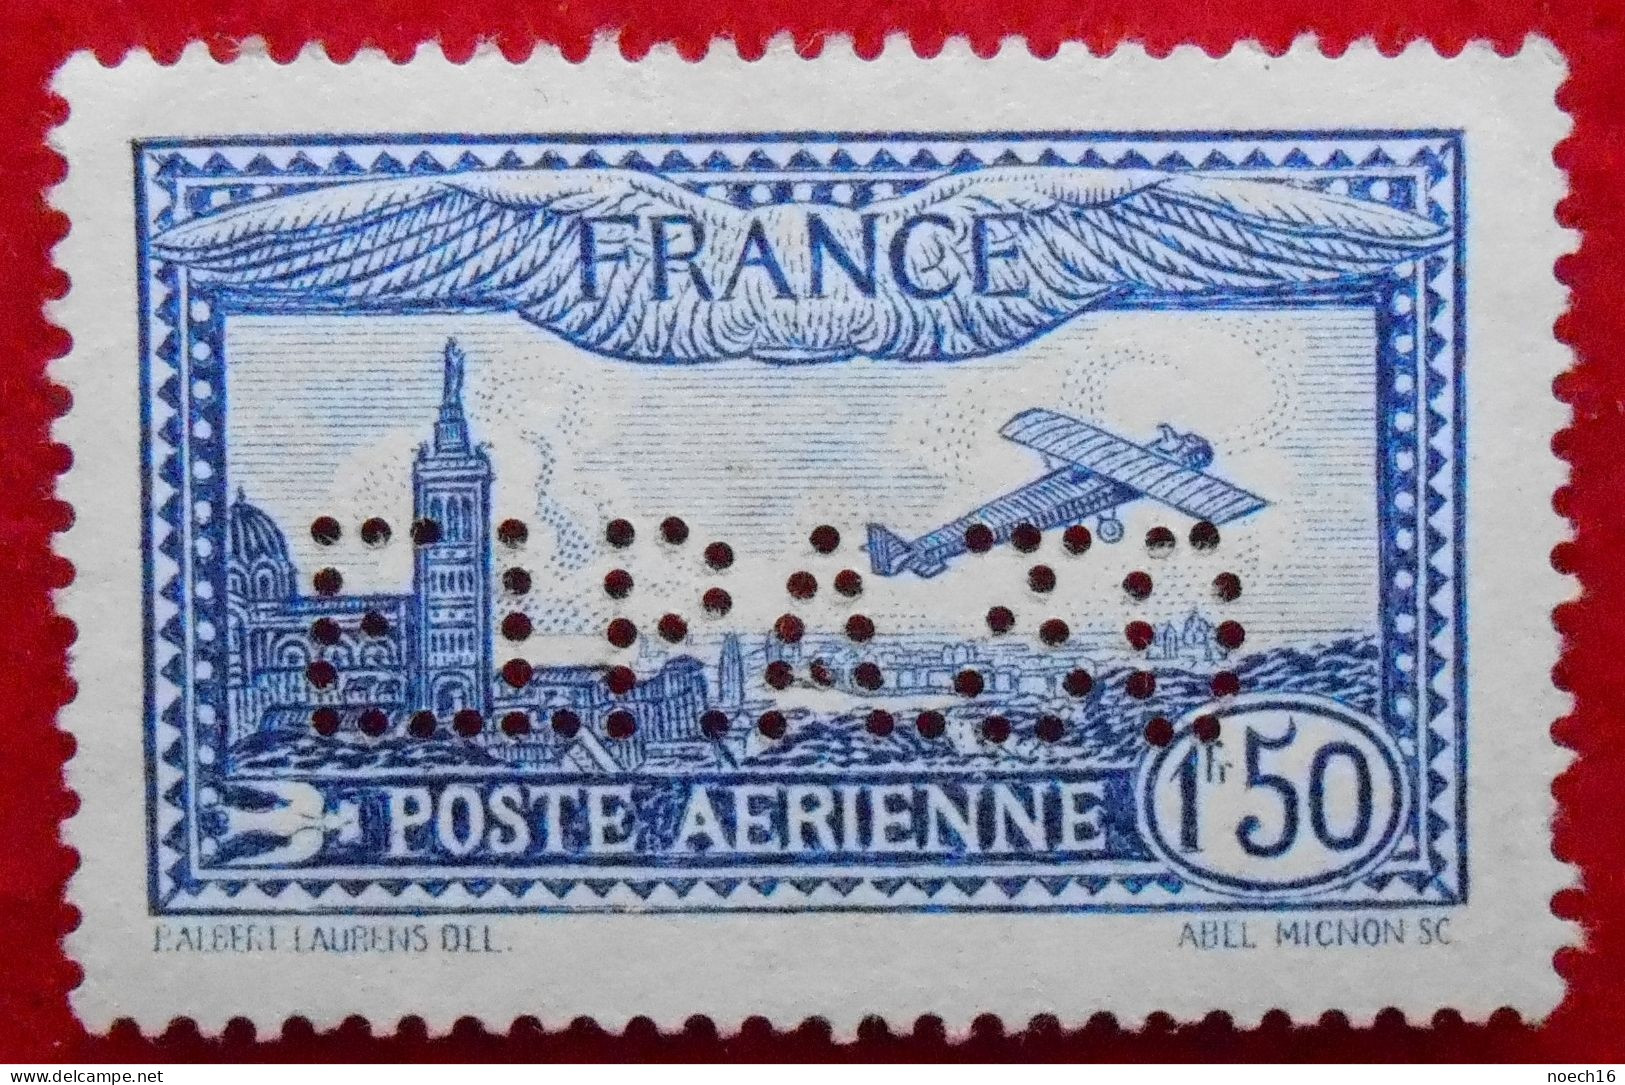 RARE Poste Aérienne Y&T 6c  1f 50 (+5f) Outremer Perforé EIPA30 (exposition De La Poste Aérienne à Paris En 1930) - 1927-1959 Mint/hinged